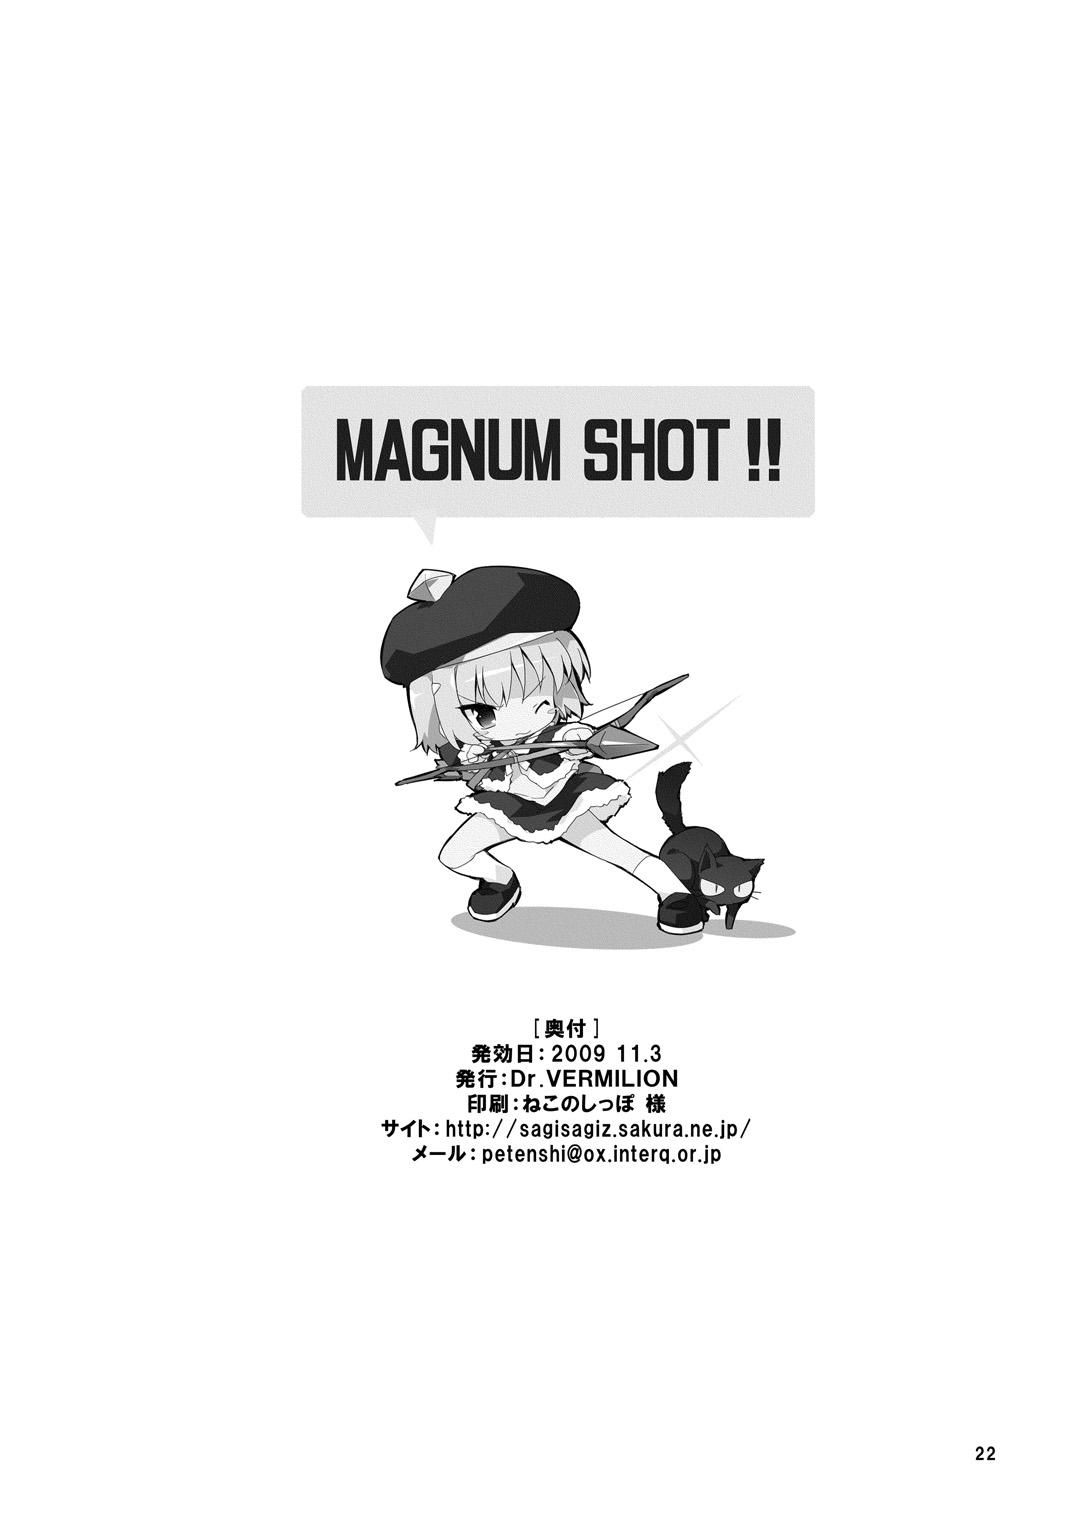 MAGNUM SHOT!! 20